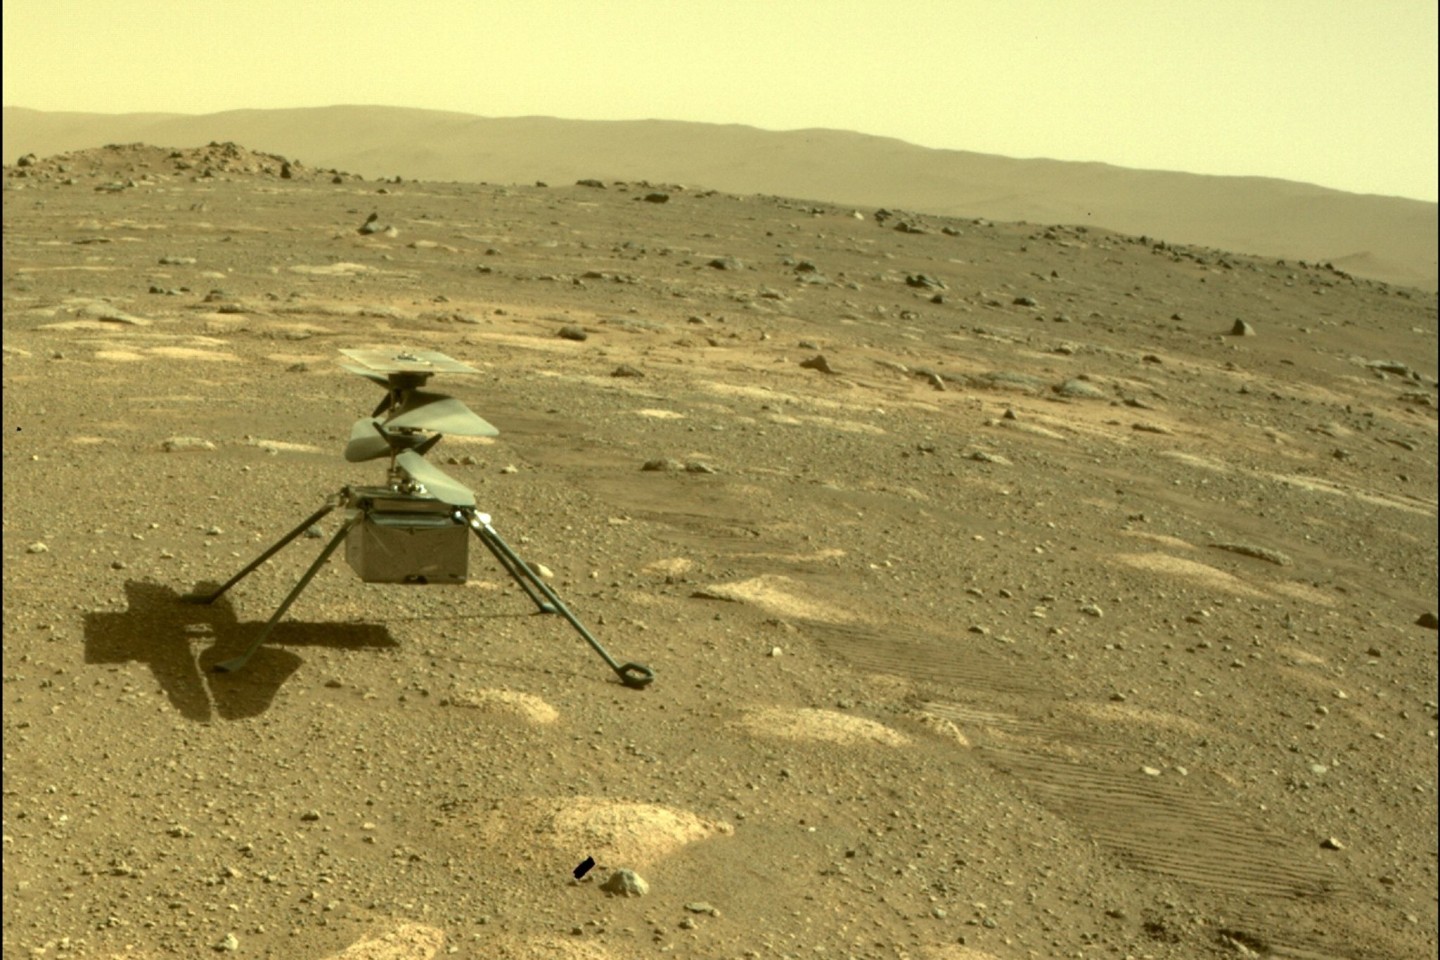 Der Hubschrauber «Ingenuity» der US-Raumfahrtbehörde Nasa zu sehen auf dem Mars, aufgenommen von der hinteren Kamera des Rovers «Perseverance».